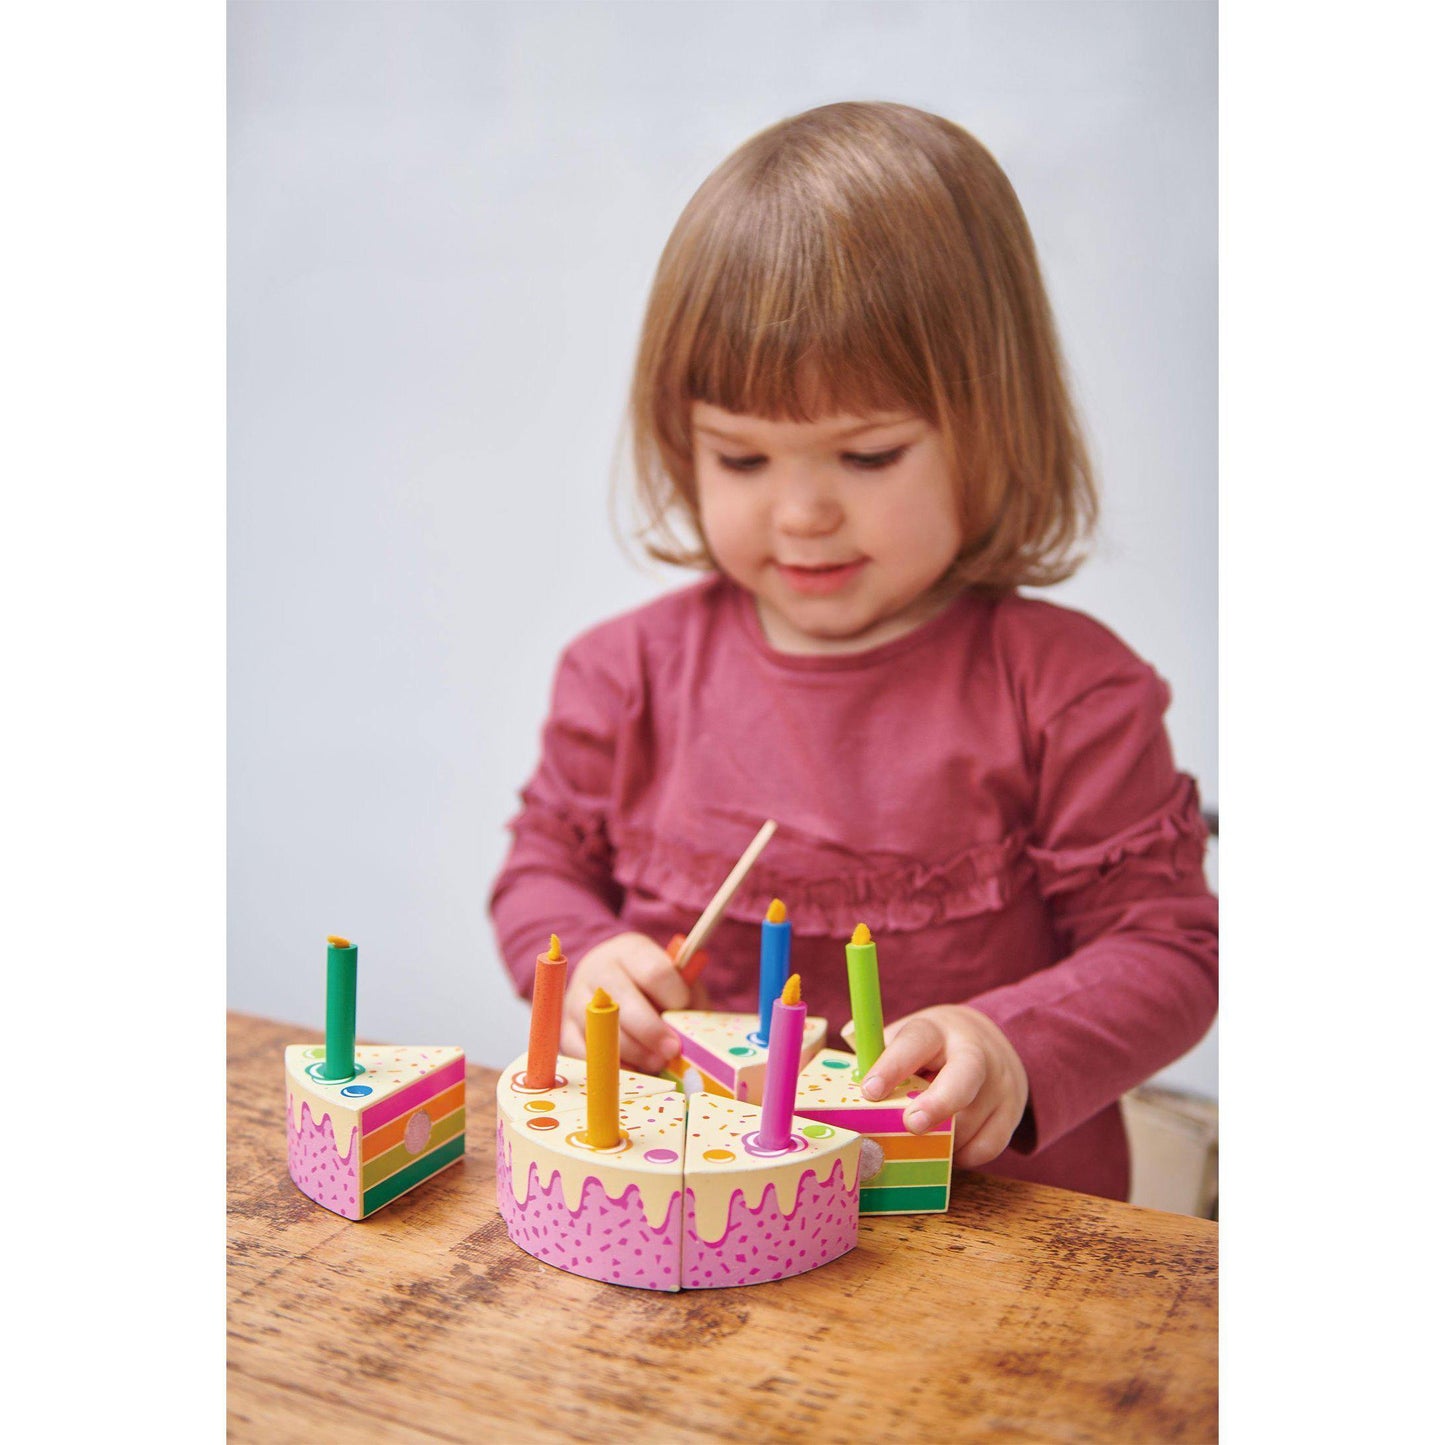 Szivárvány szülinapi torta, prémium minőségű fából- Rainbow Birthday Cake - 14 darab - Tender Leaf Toys-Tender Leaf Toys-4-Játszma.ro - A maradandó élmények boltja